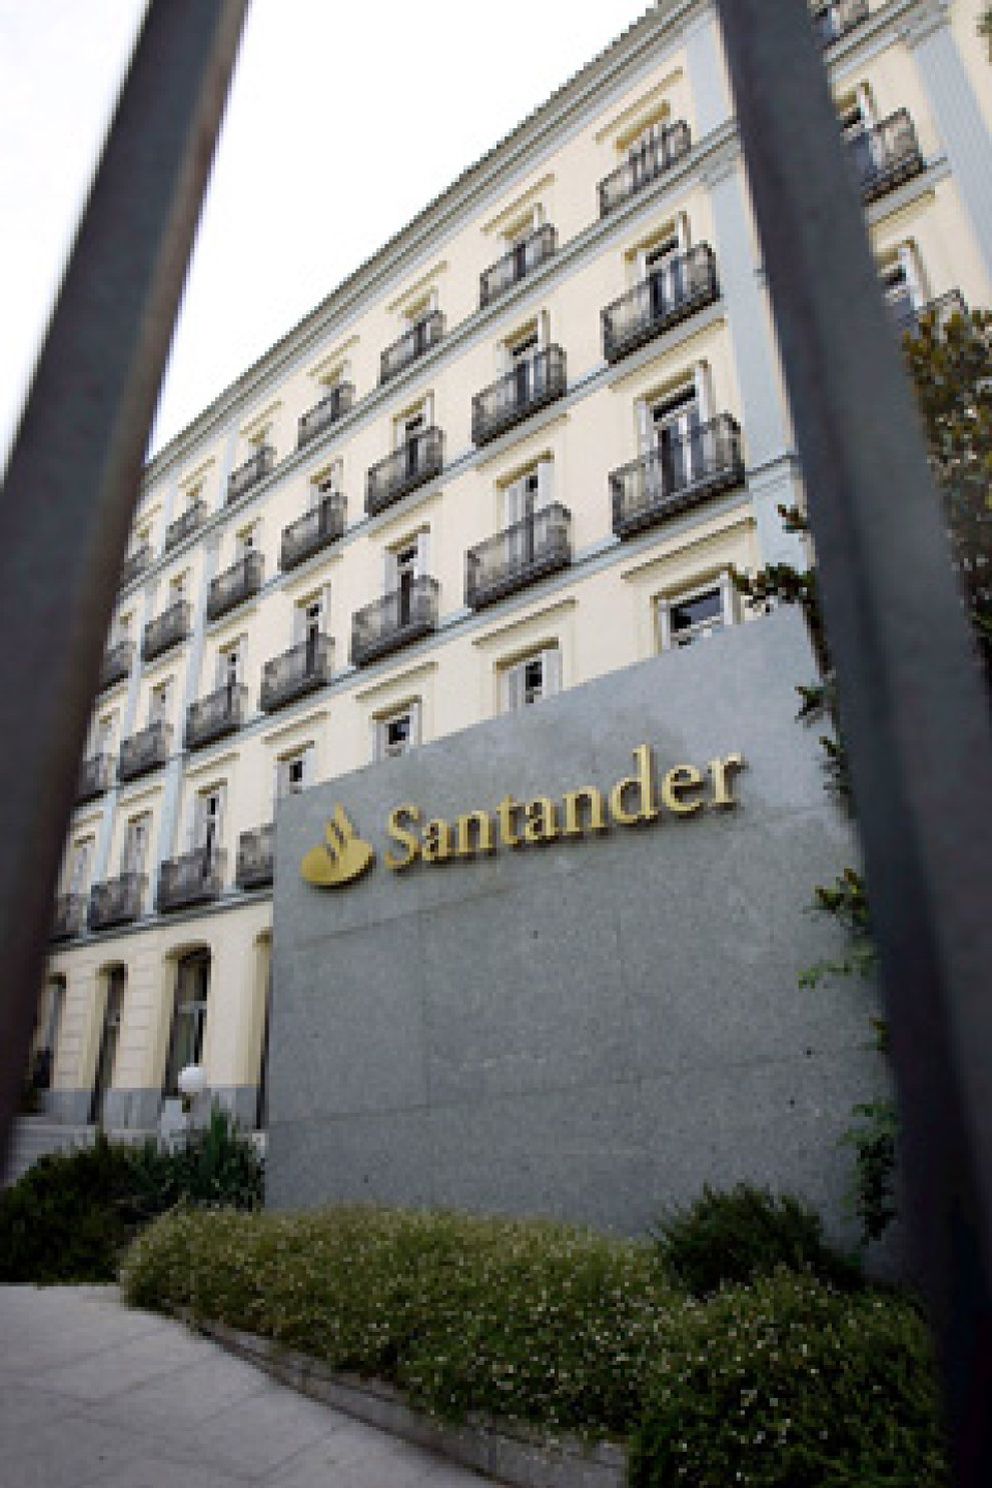 Foto: Santander traslada a Irlanda su negocio de seguros para pagar menos impuestos